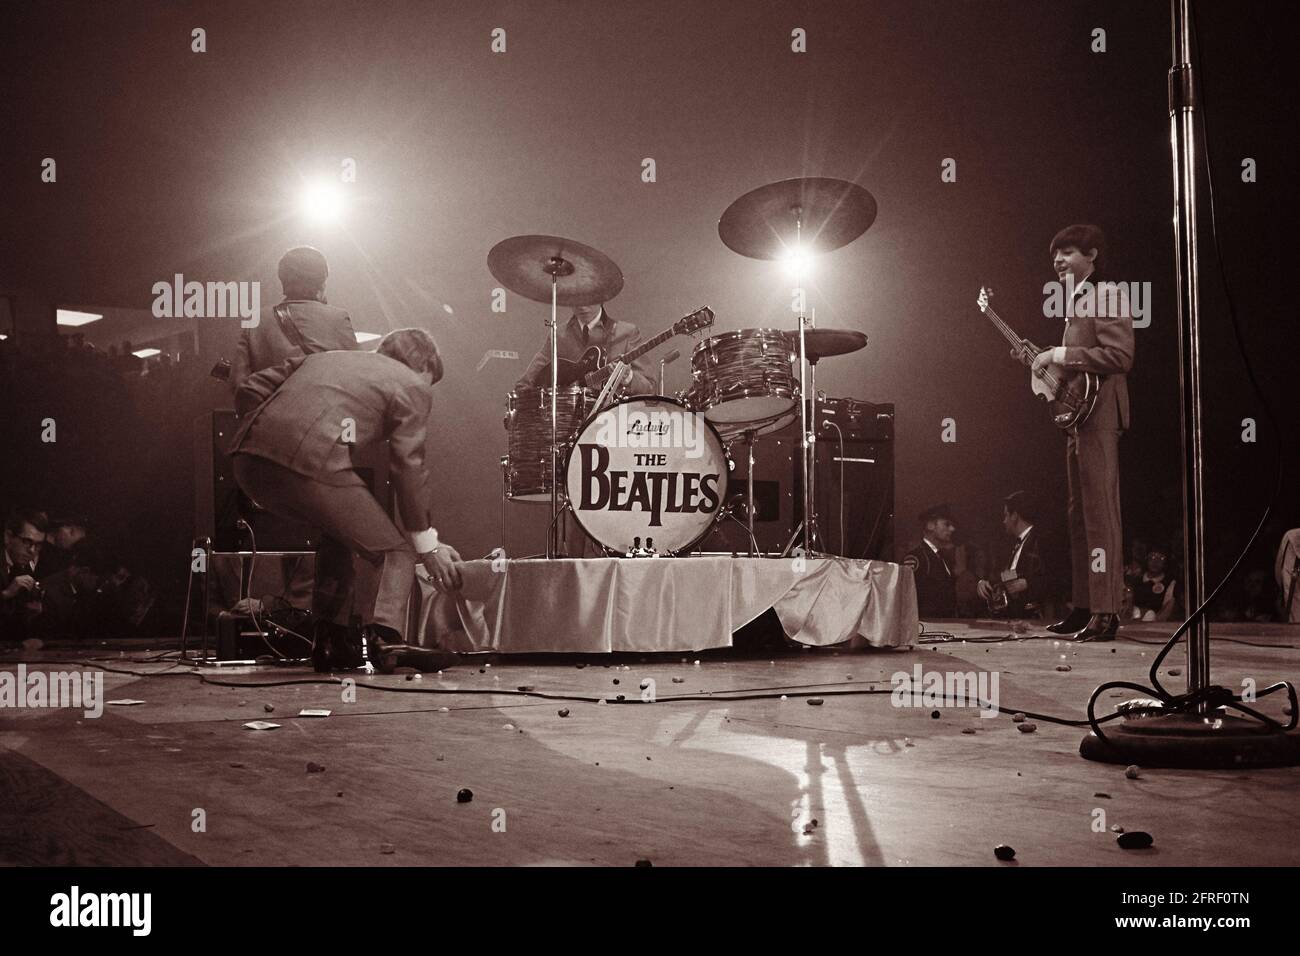 Les Beatles se présentant au Washington Coliseum lors de leur premier concert américain le 11 février 1964. La scène est jonchée de jelly beans de fans qui ont pelé le groupe avec eux après qu'un journal de New York a rapporté le groupe discutant d'un comme pour eux. (ÉTATS-UNIS) Banque D'Images